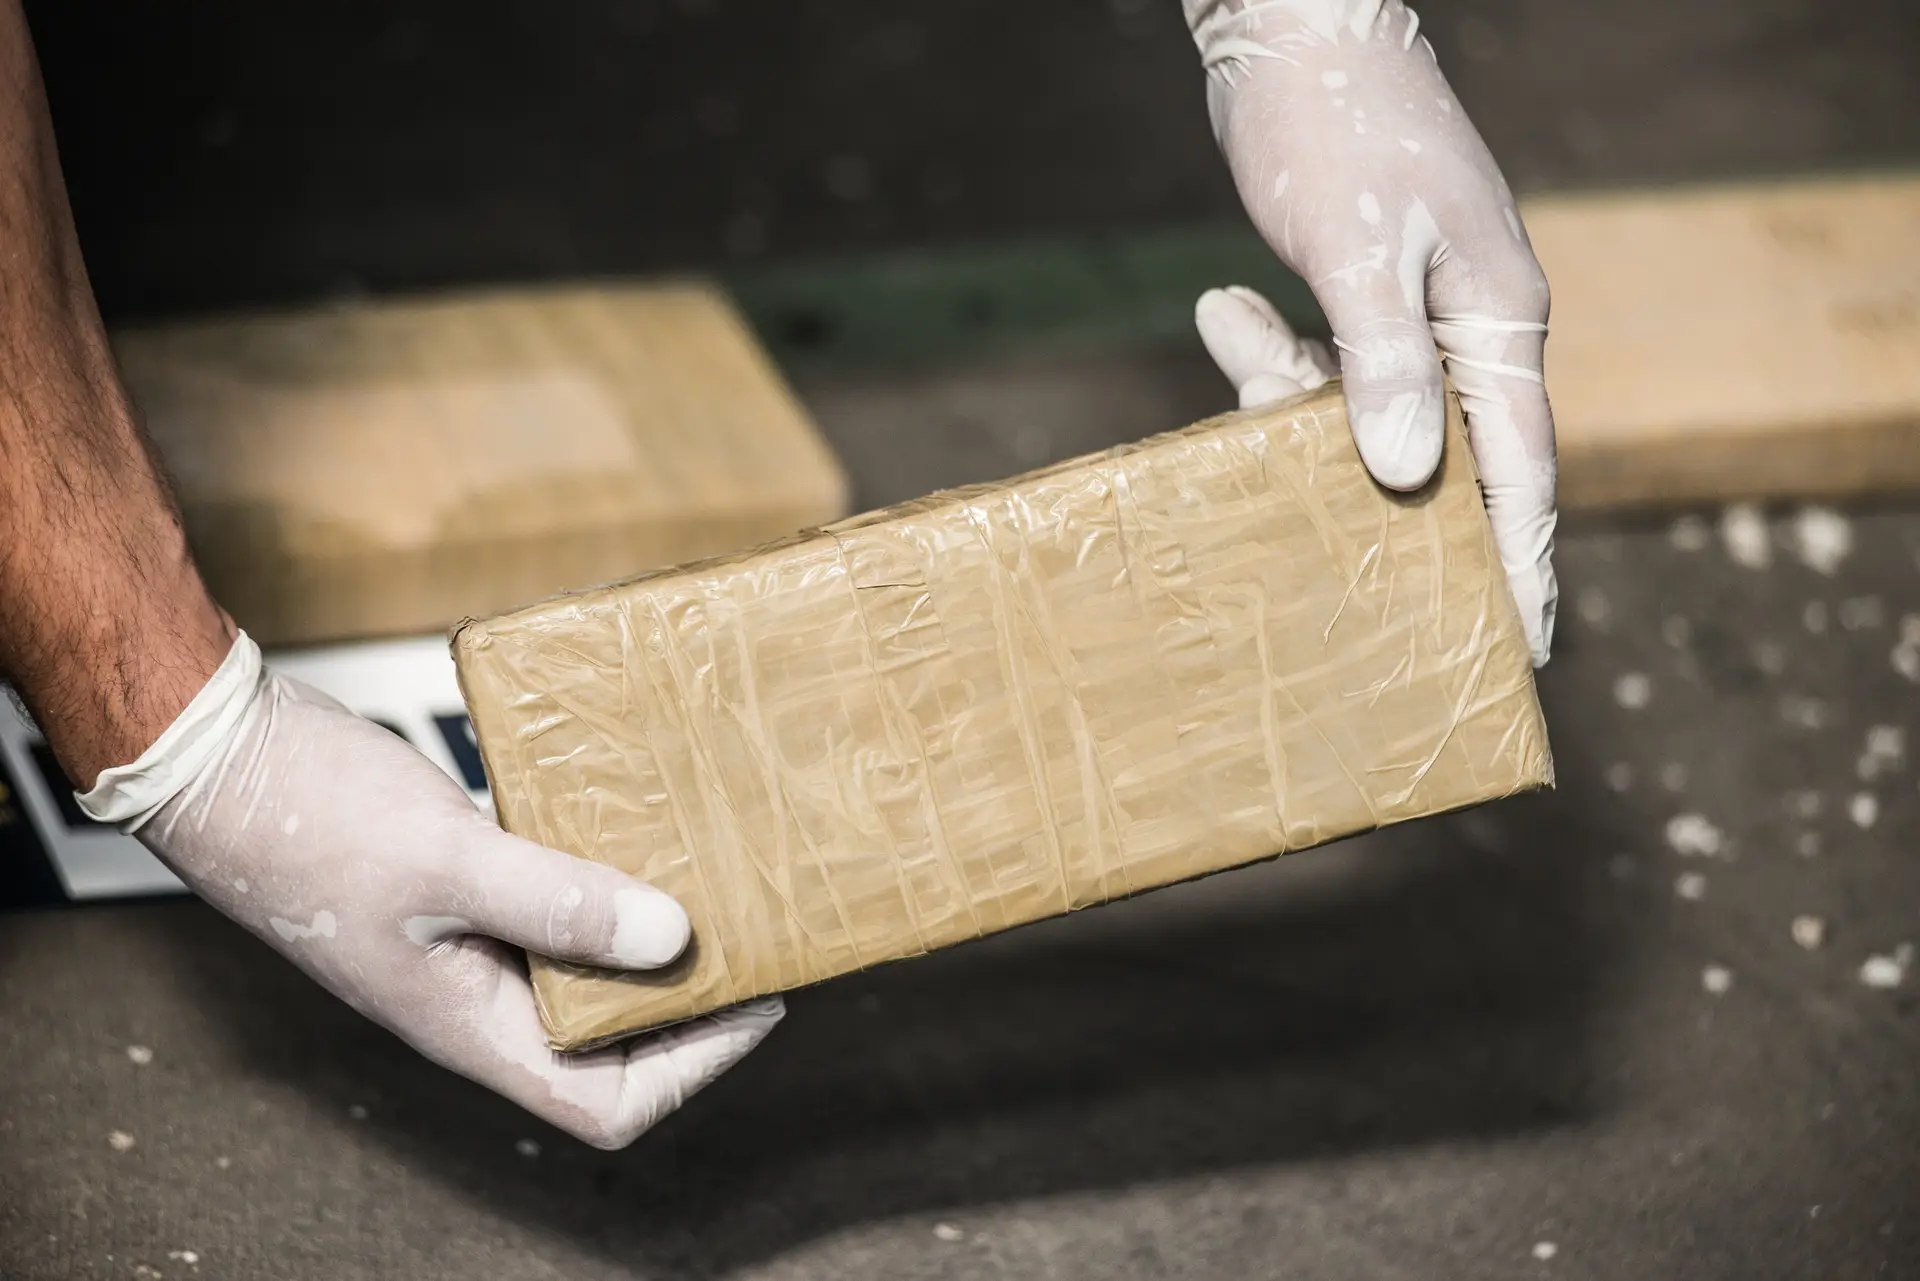 Nigéria anuncia apreensão recorde de 1,8 toneladas de cocaína avaliada em 277,3 M€